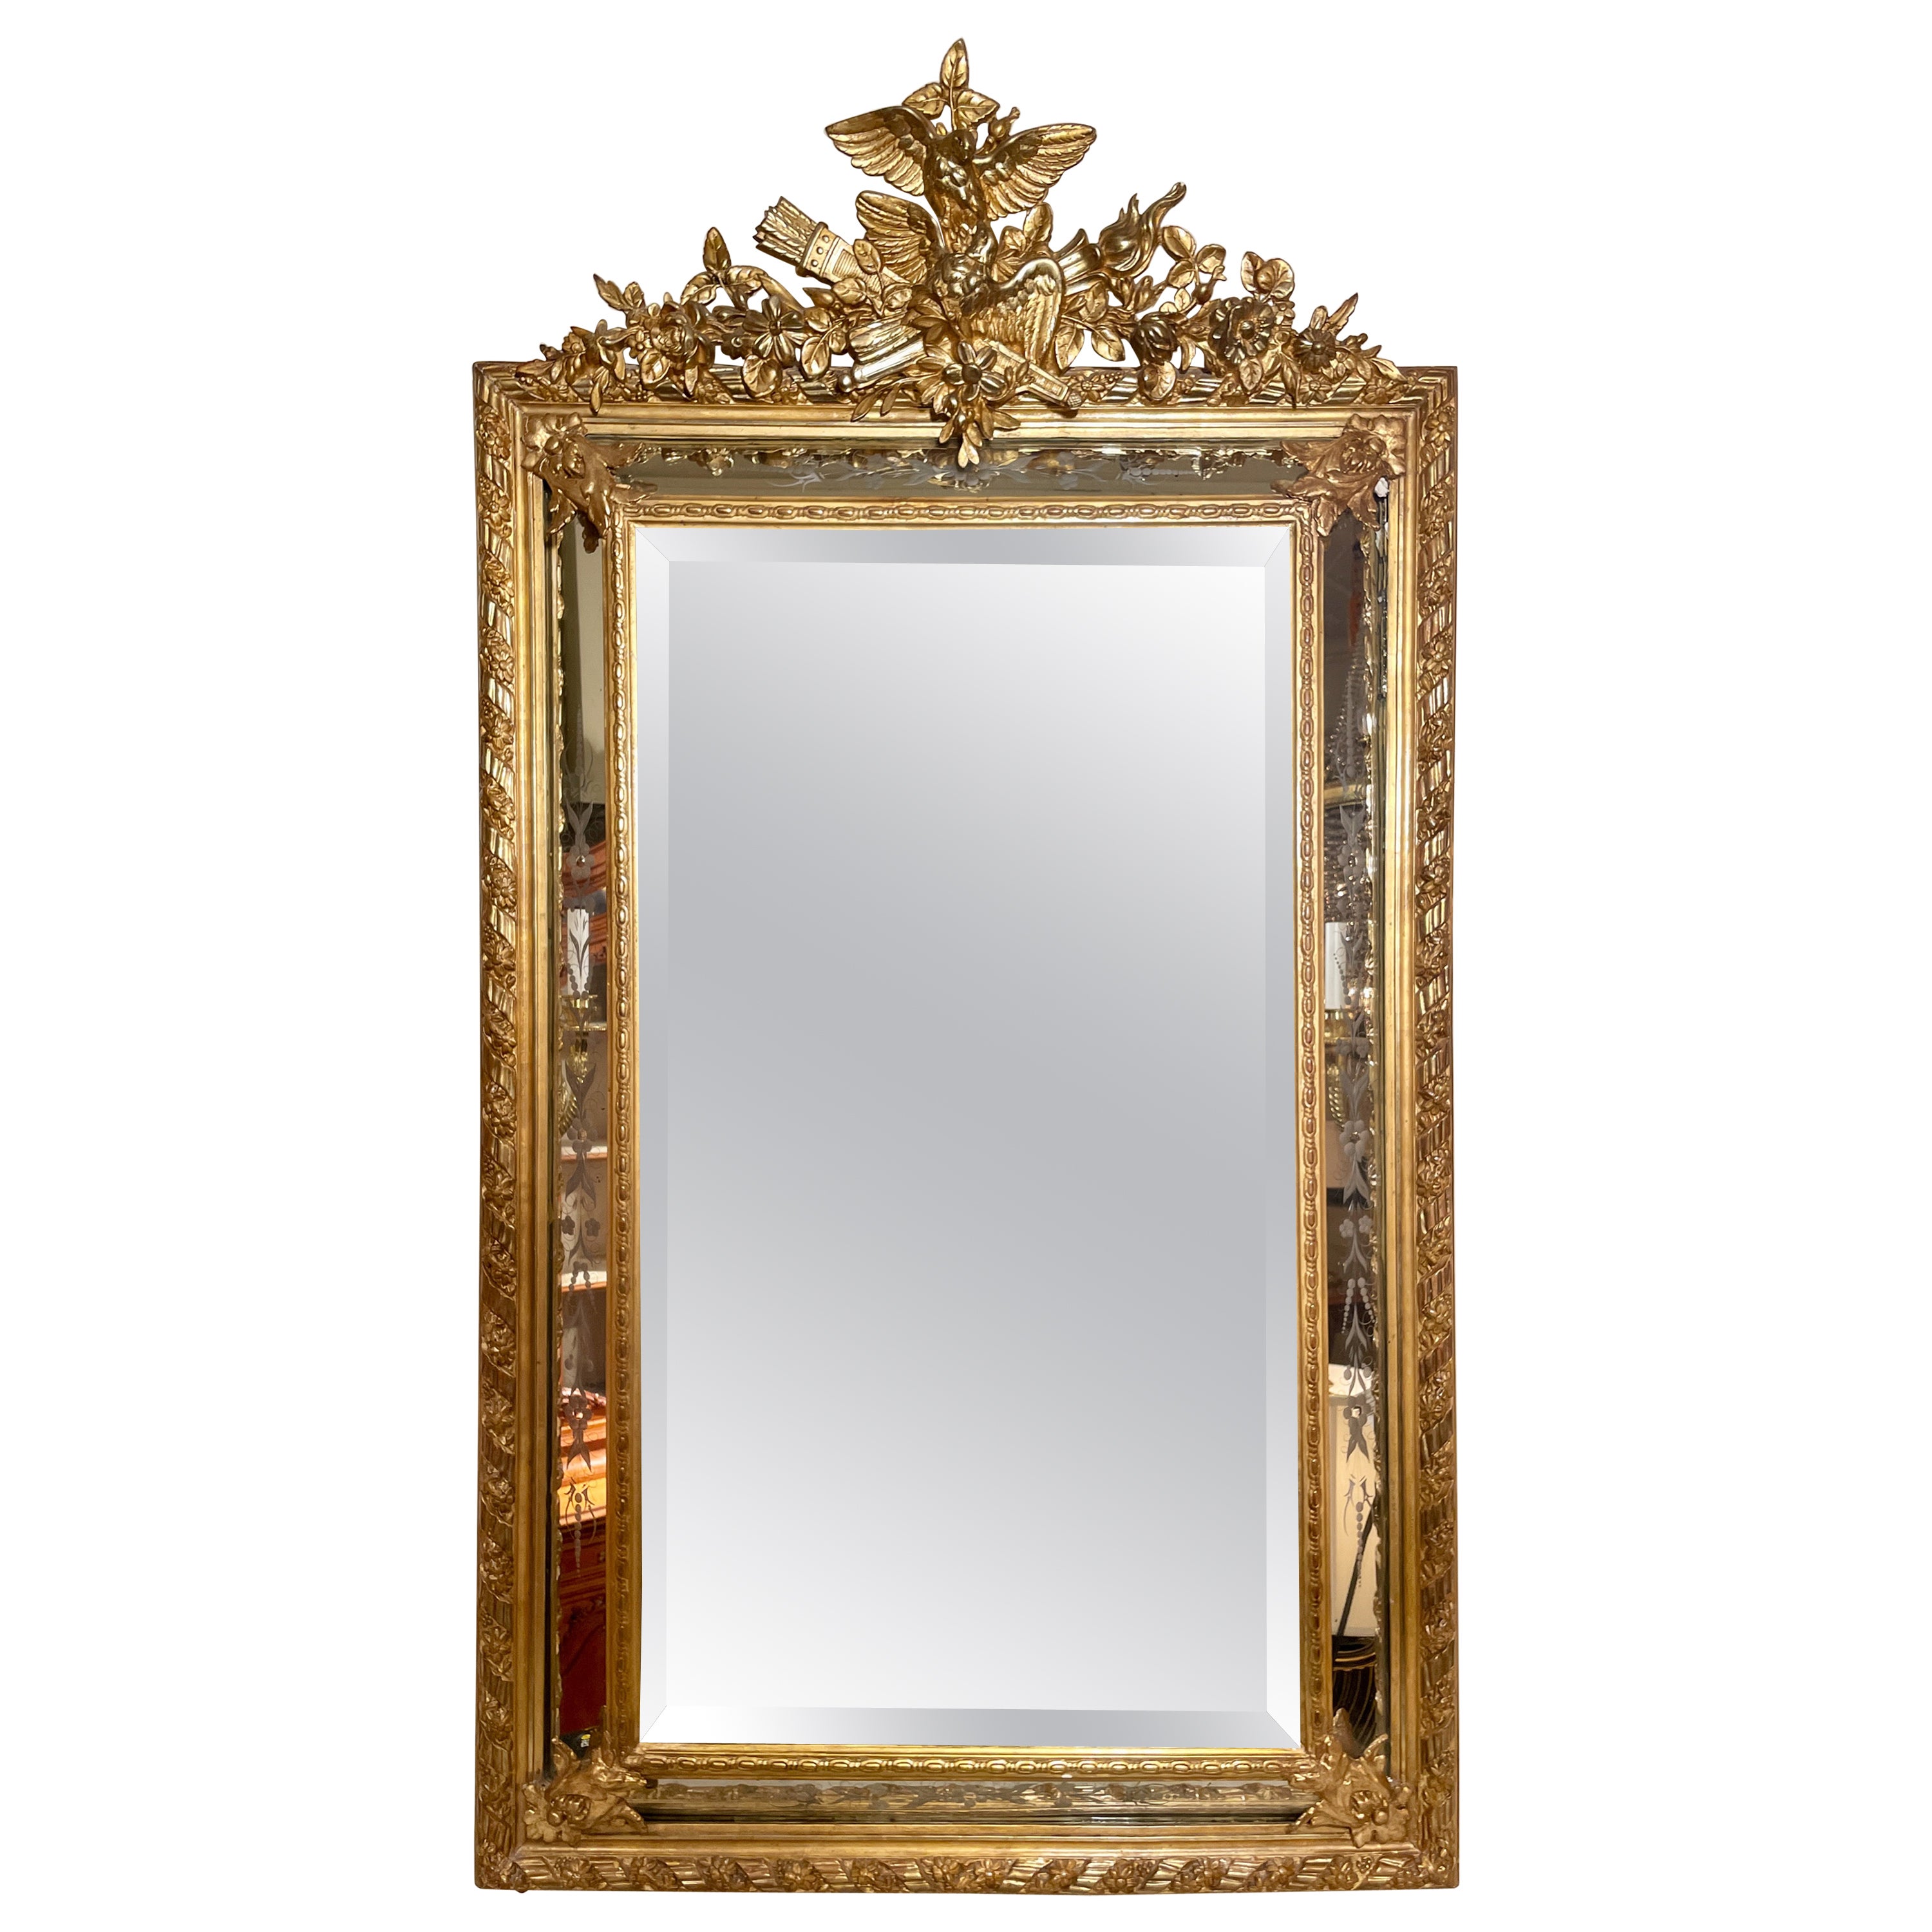 Antique miroir français Louis XVI gravé et biseauté à la feuille d'or, vers 1885-1895